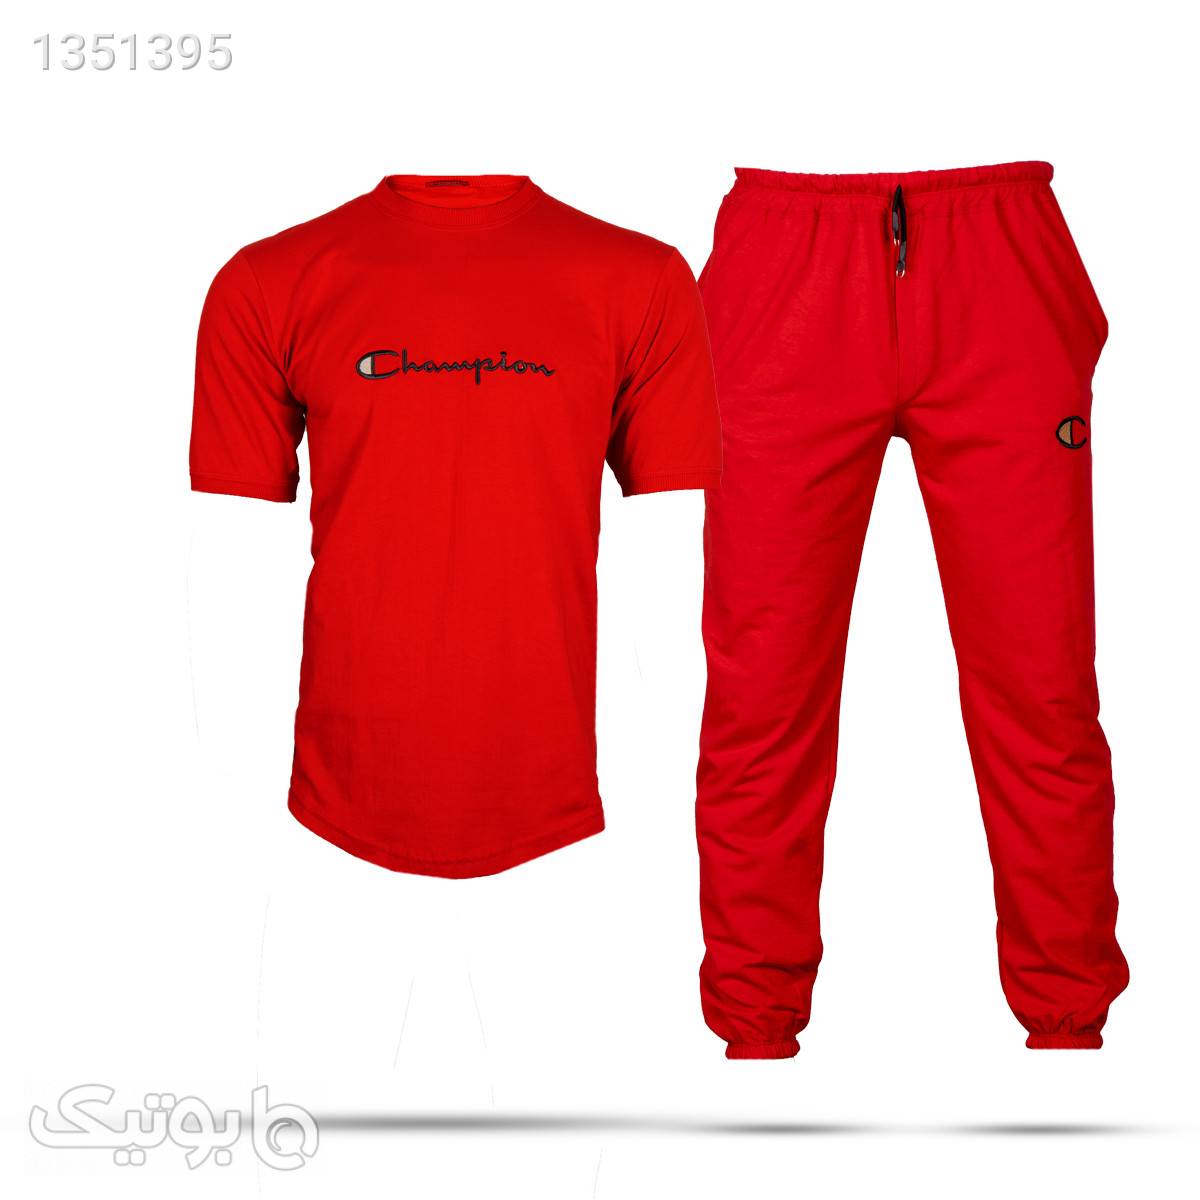 ست تیشرت شلوار مردانه مدل HB42 قرمز لباس راحتی مردانه